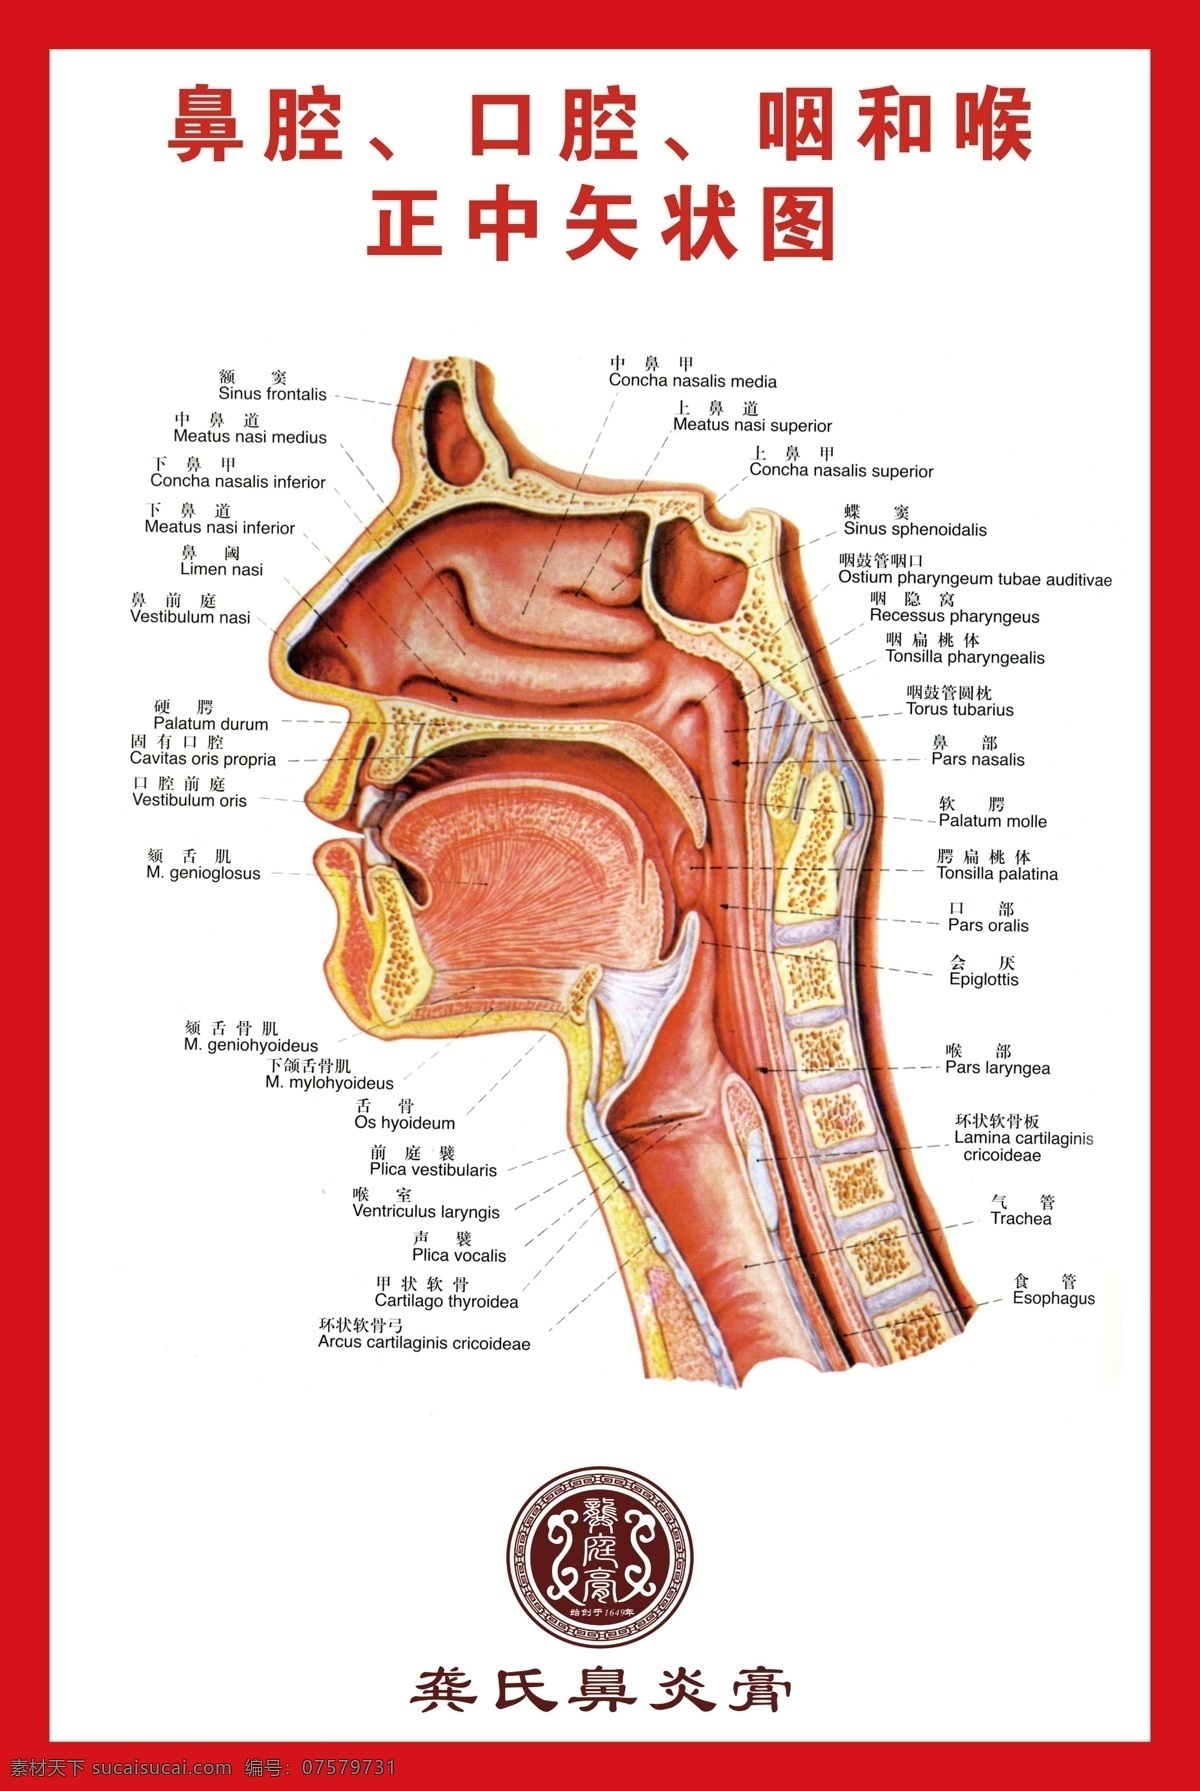 鼻腔分布图 鼻腔 分布 口腔 咽喉分布图 解剖图 分层